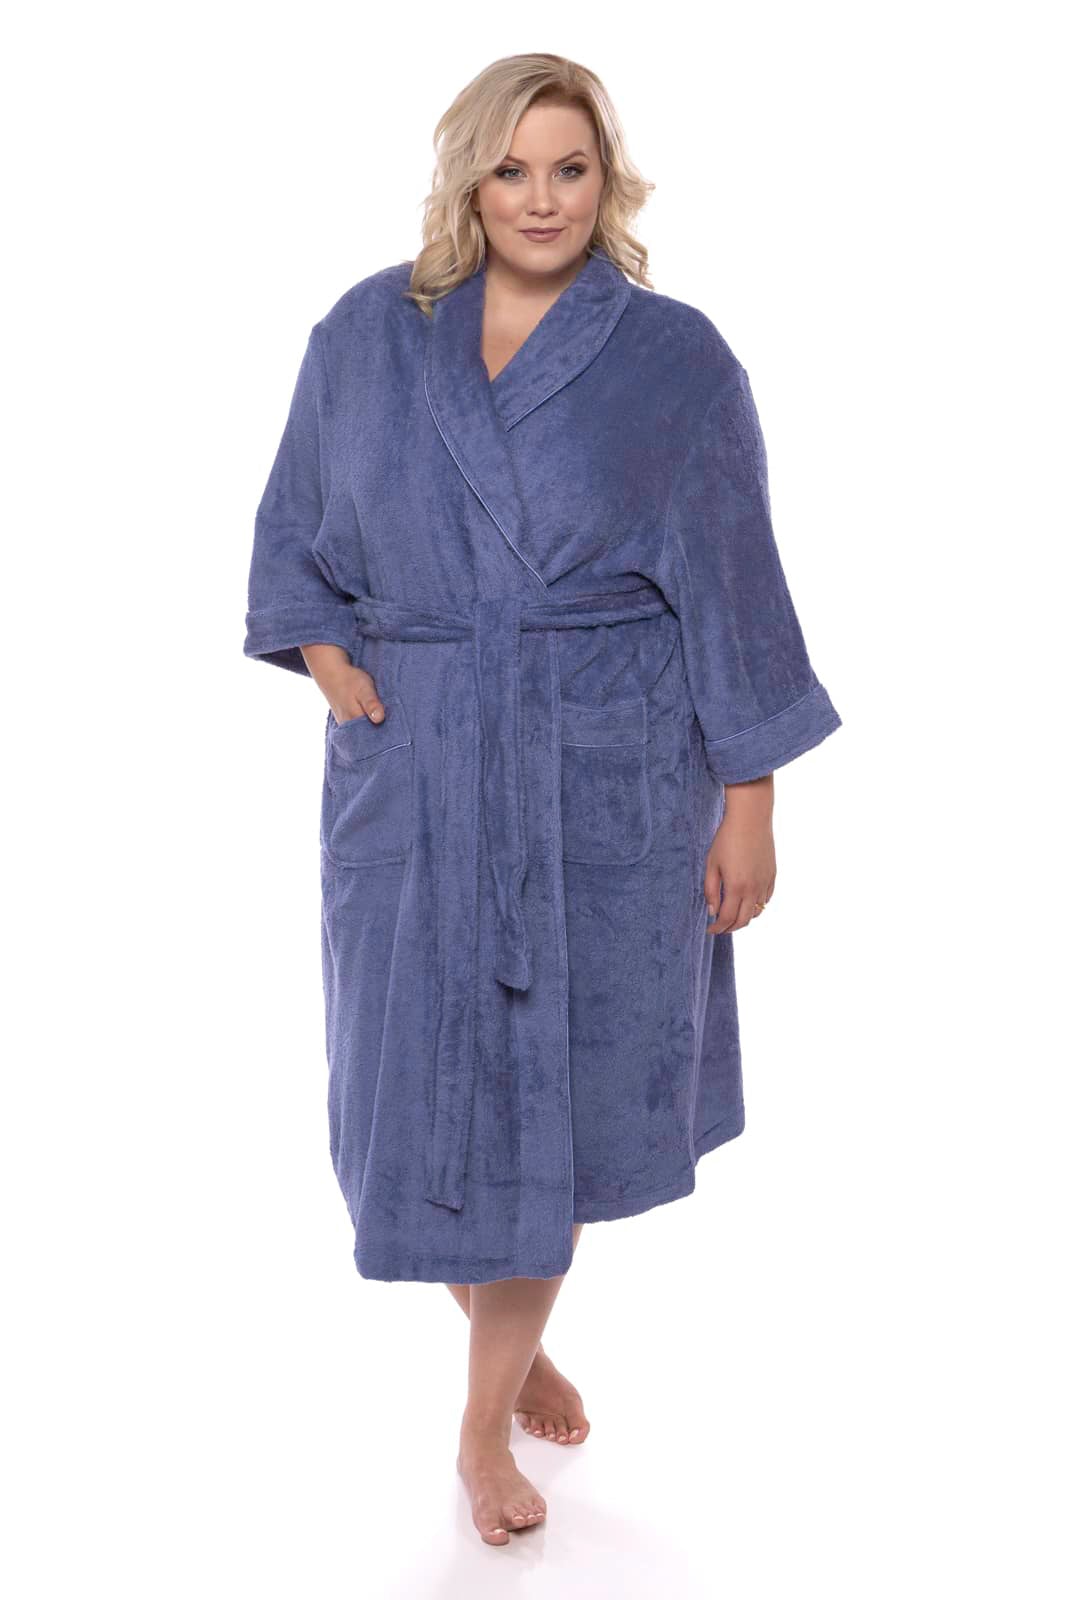 Texere Women's Bathrobe, Terry Cloth Long Robes